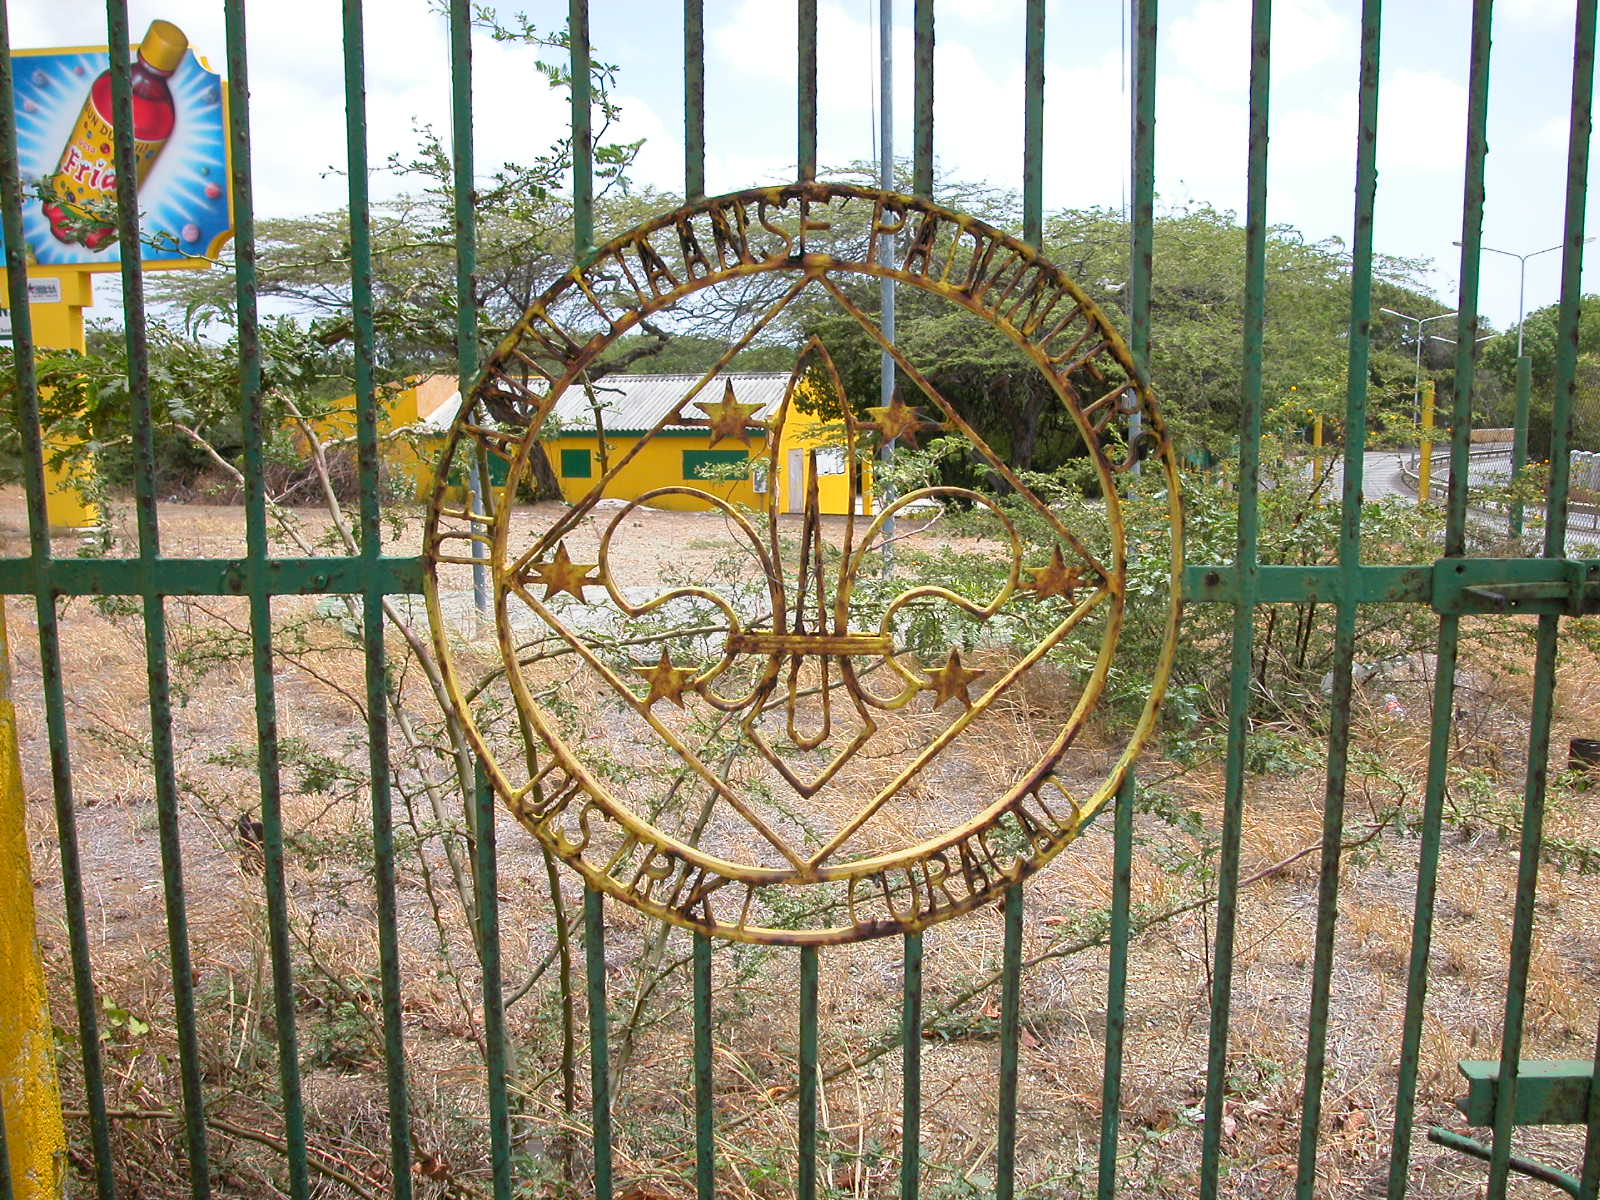 jacco curacao tropics gate fence seal de antiliaanse padvinders district